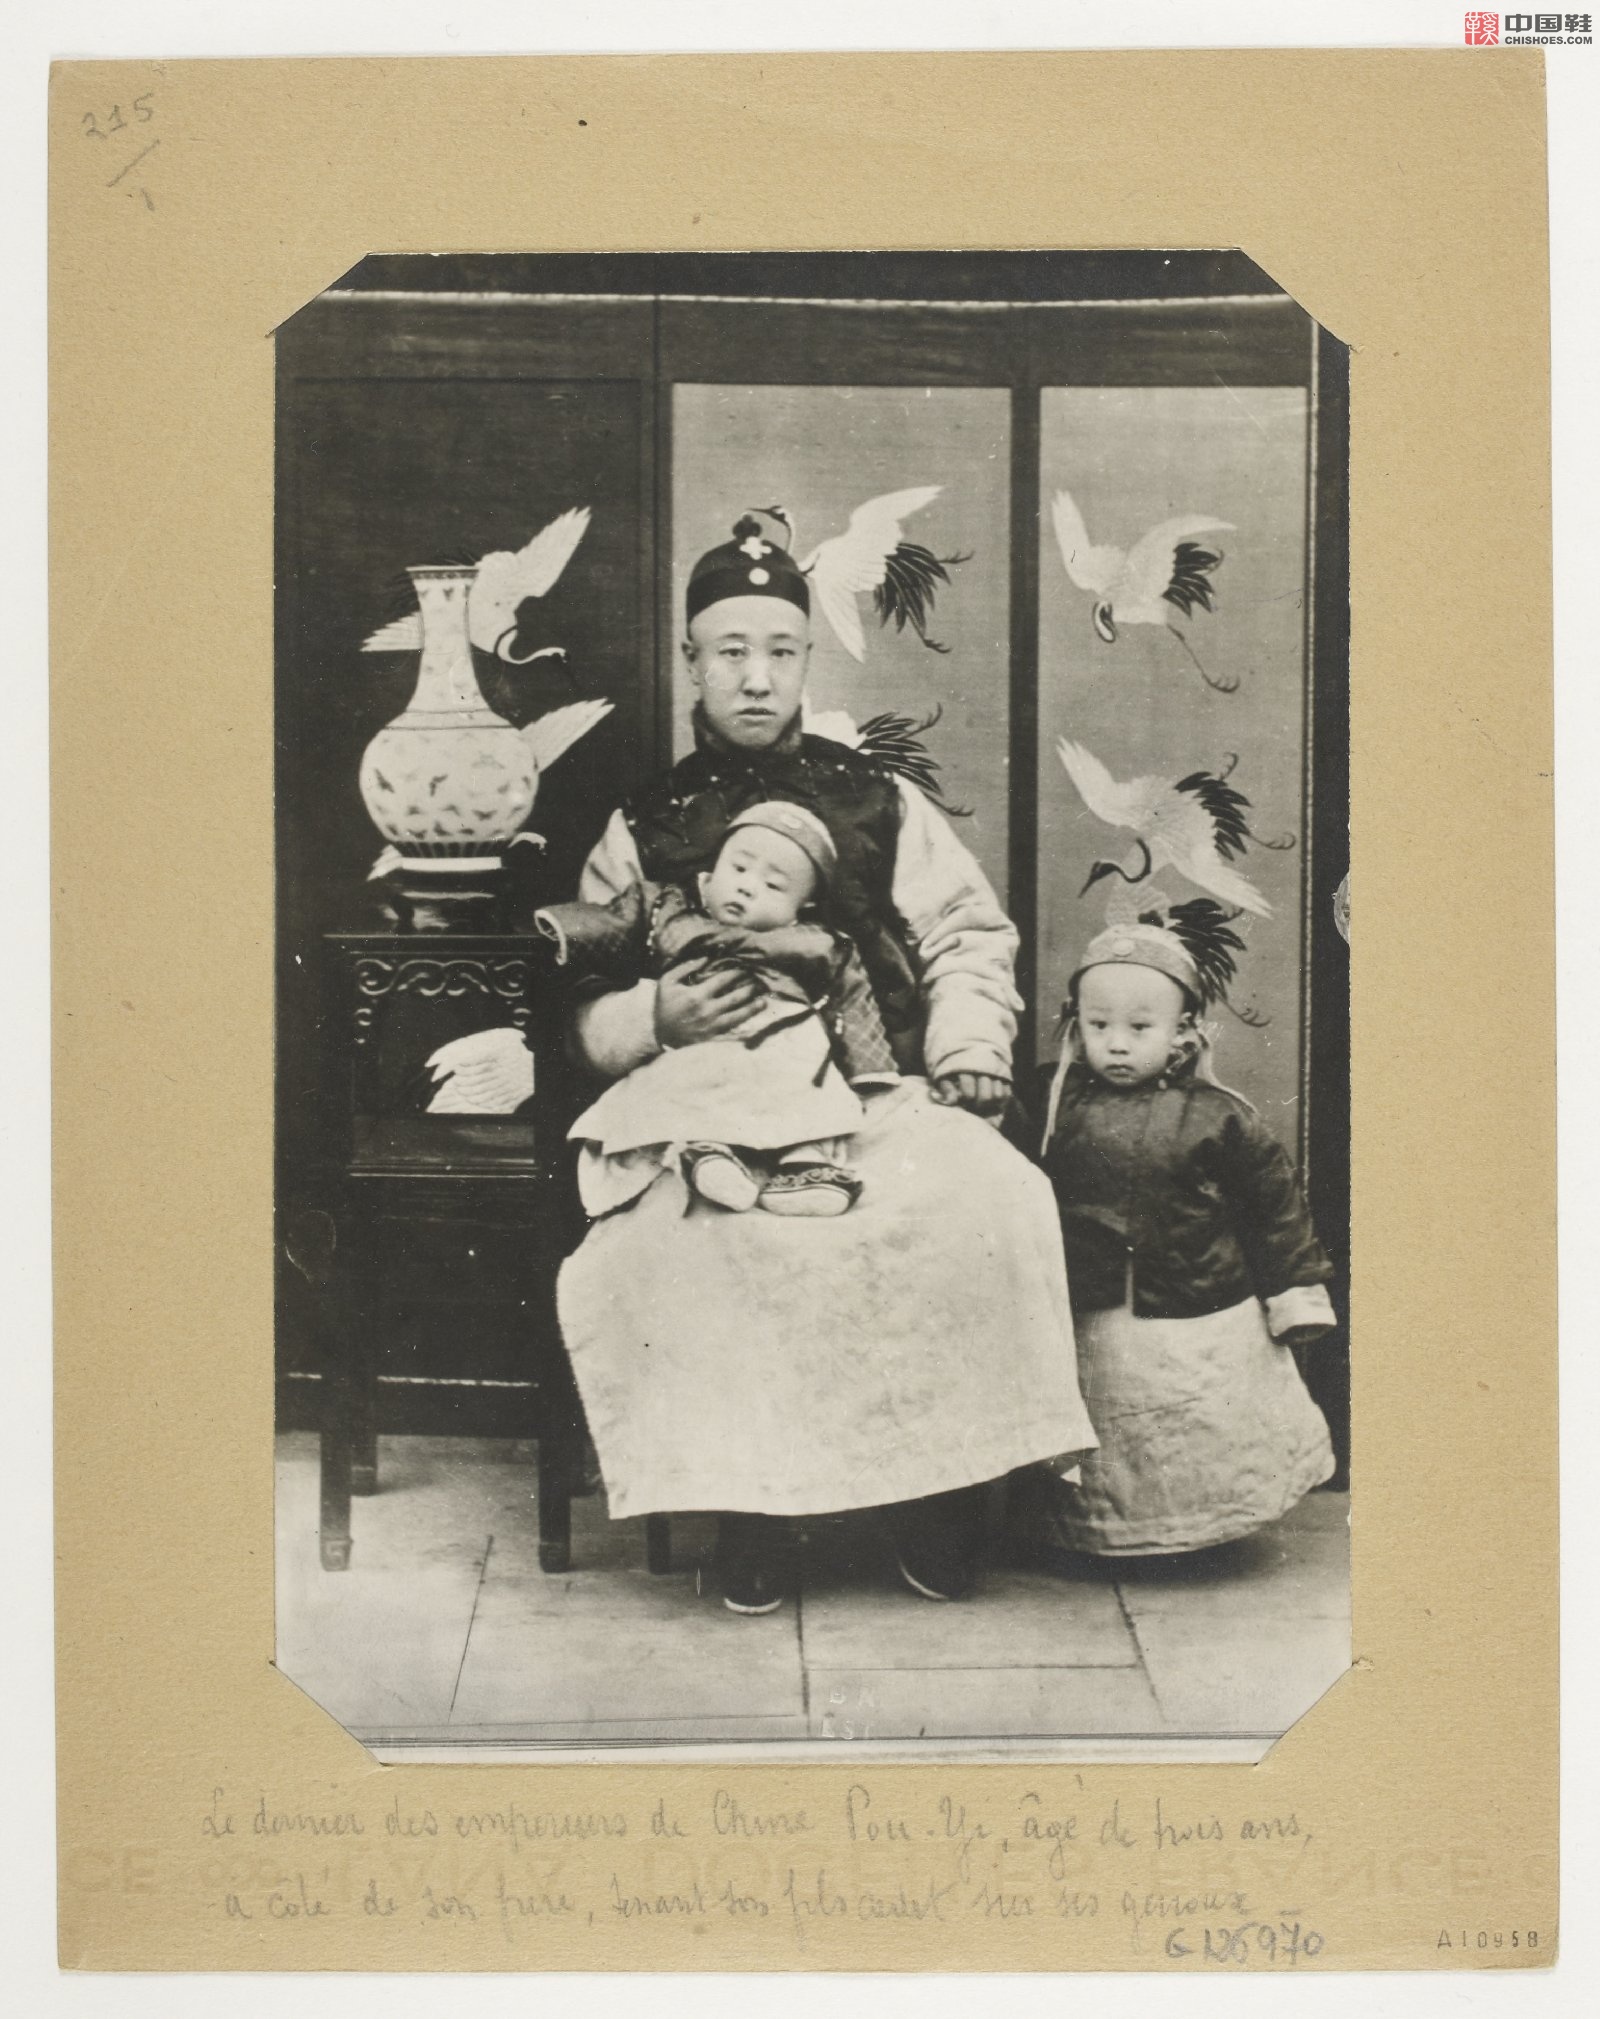 拉里贝的中国影像记录.415幅.By Firmin Laribe.1900-1910年_Page_002.jpg